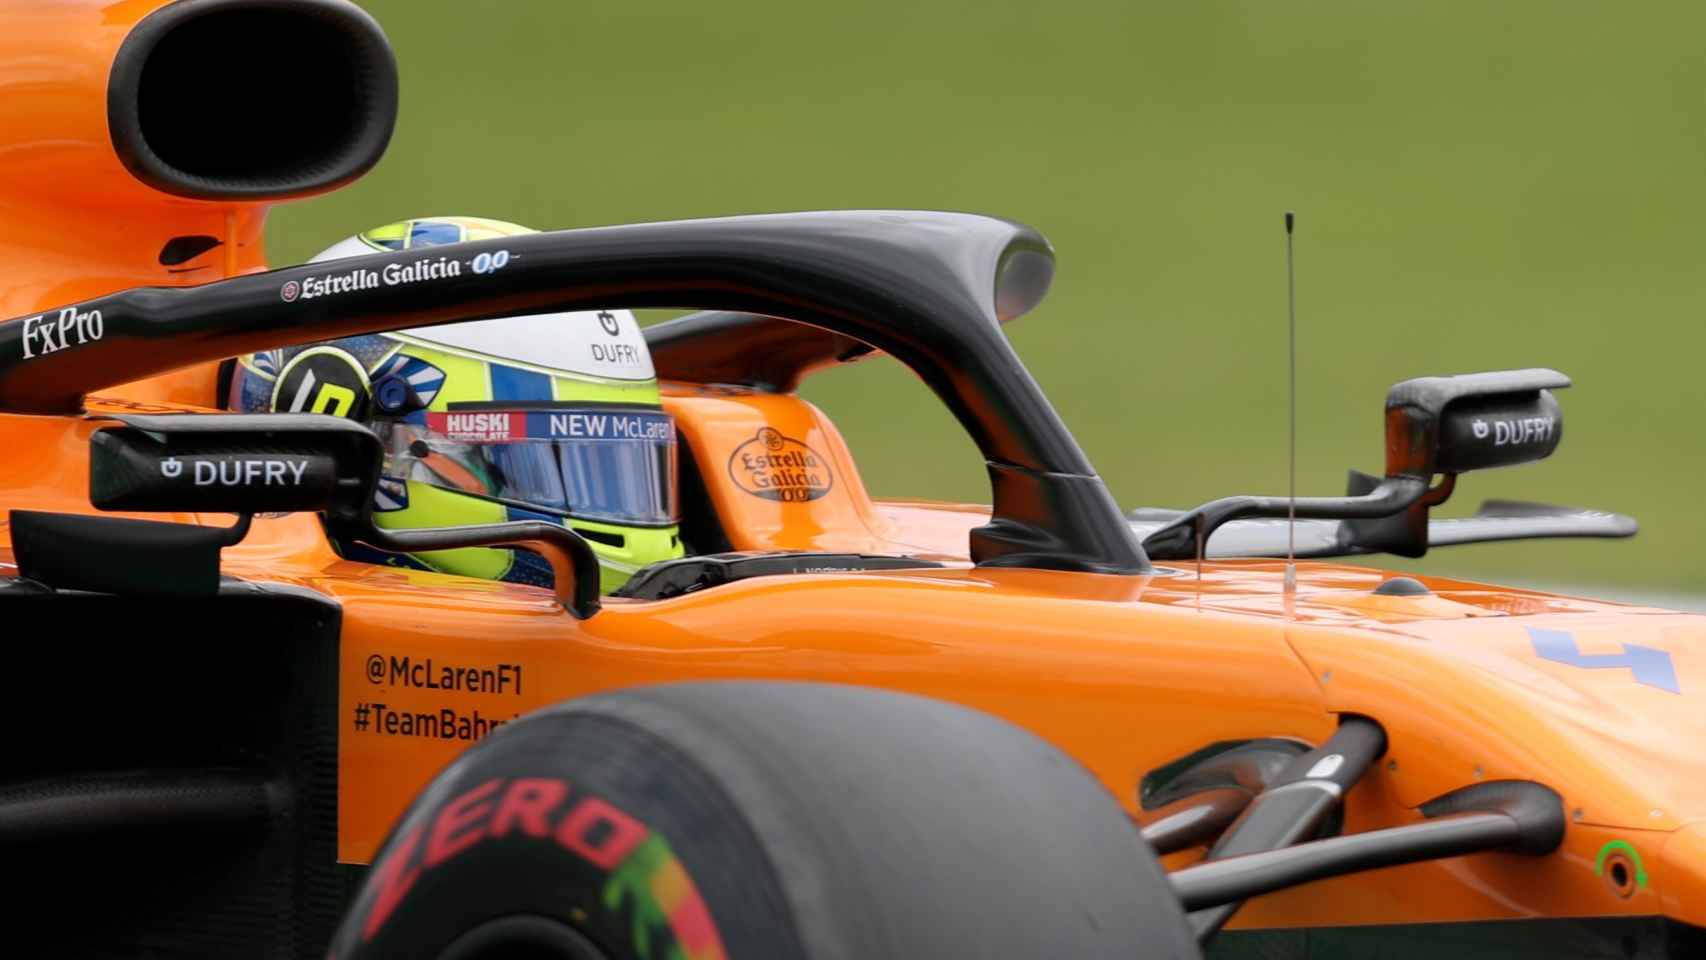 Carlos Sainz, en el GP de Brasil